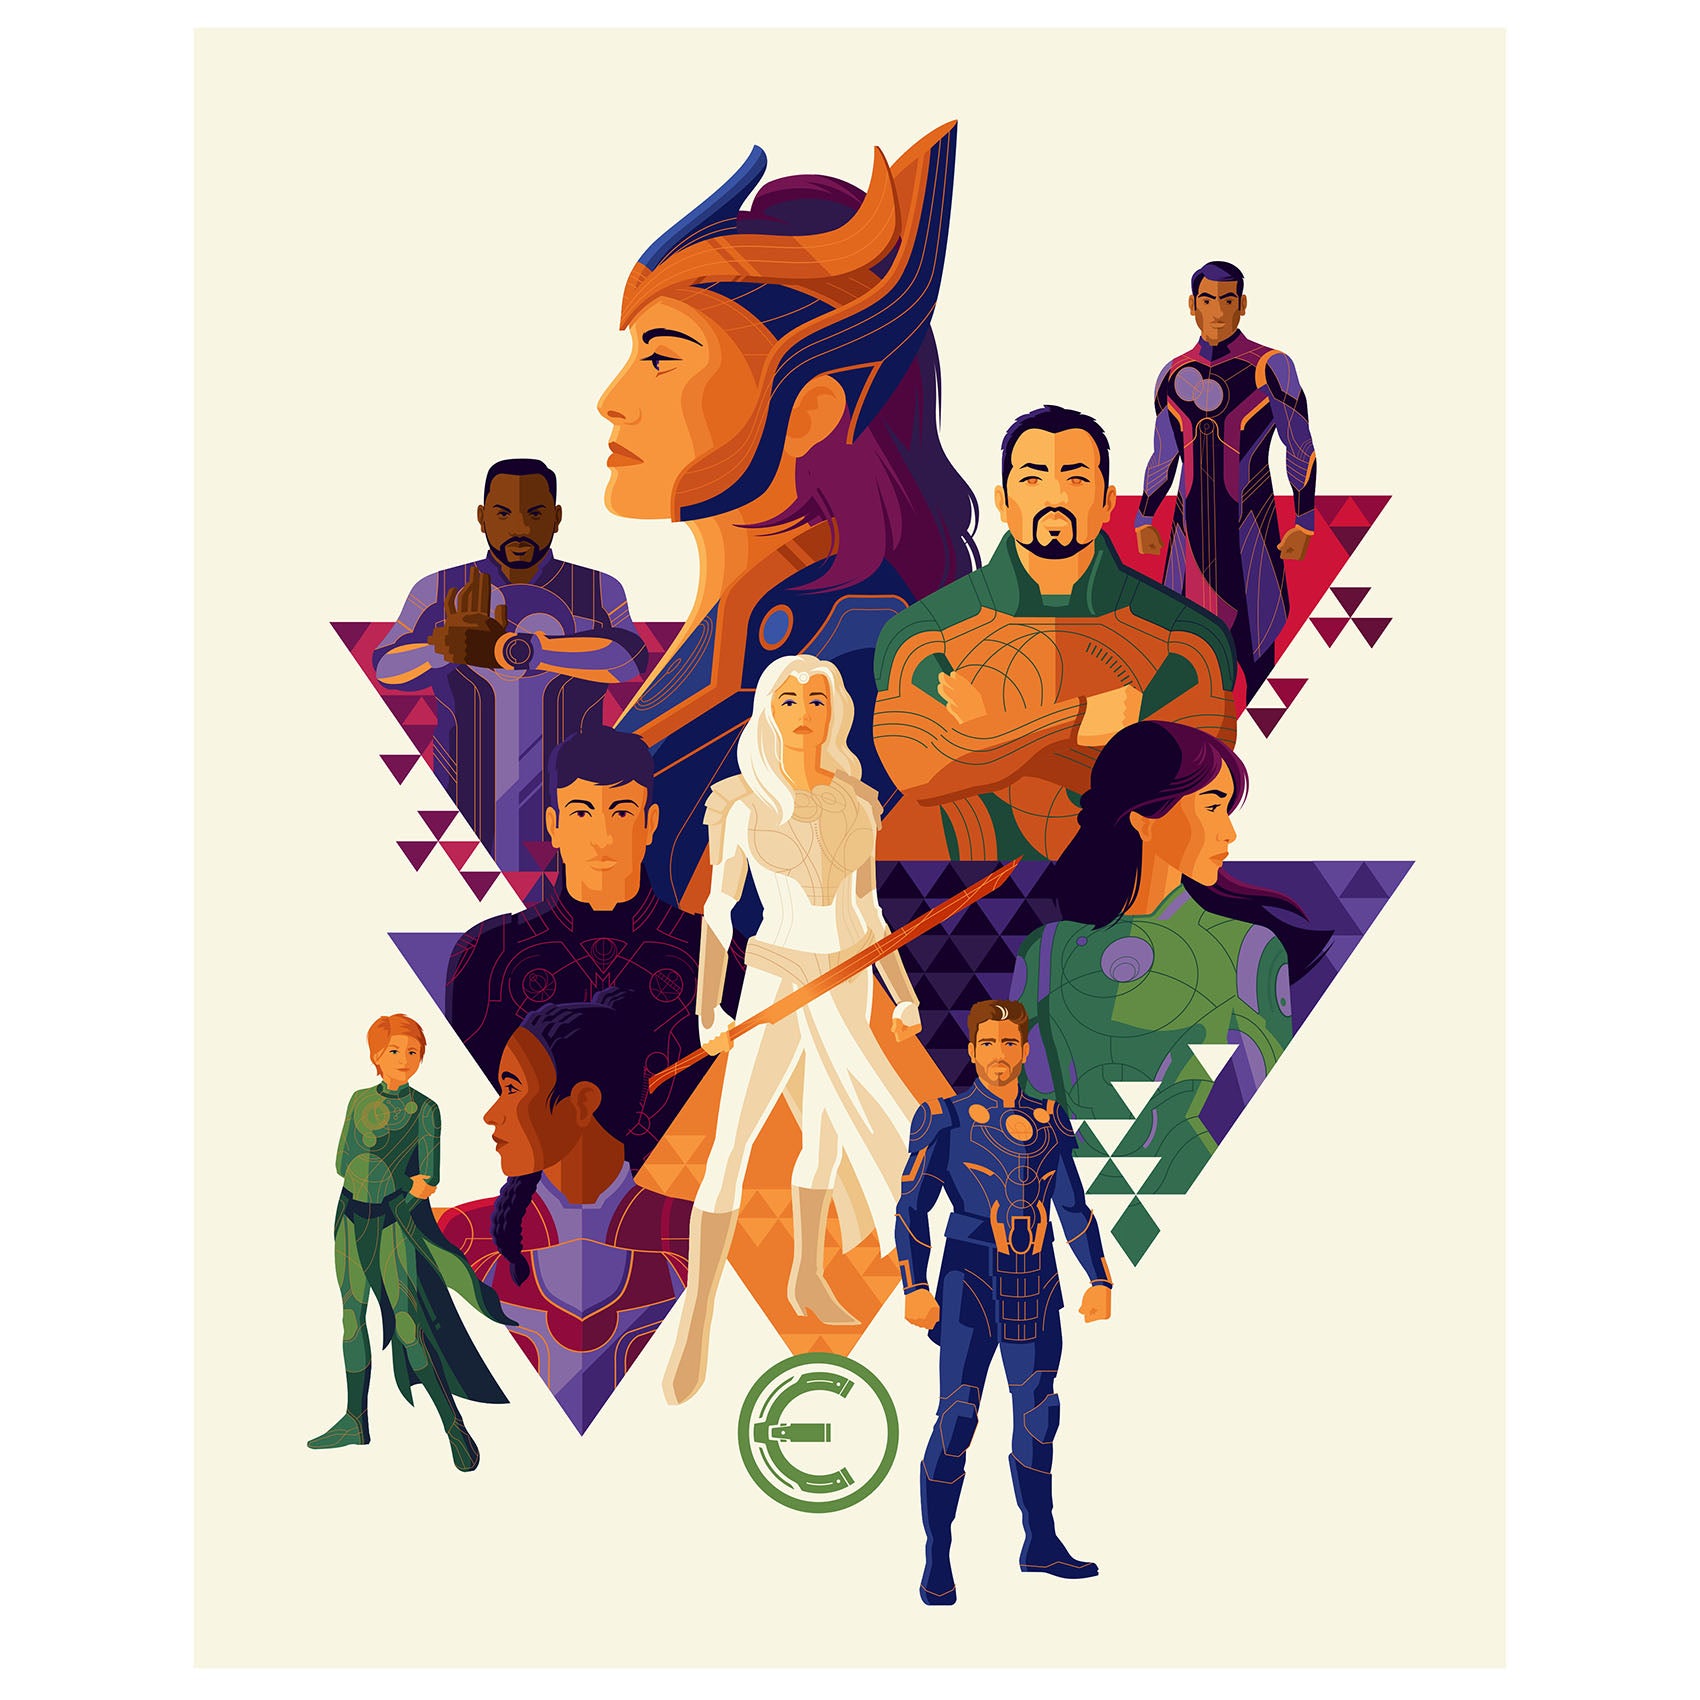 Avengers: Endgame Movie Posters Mural - Officially Licensed Marvel